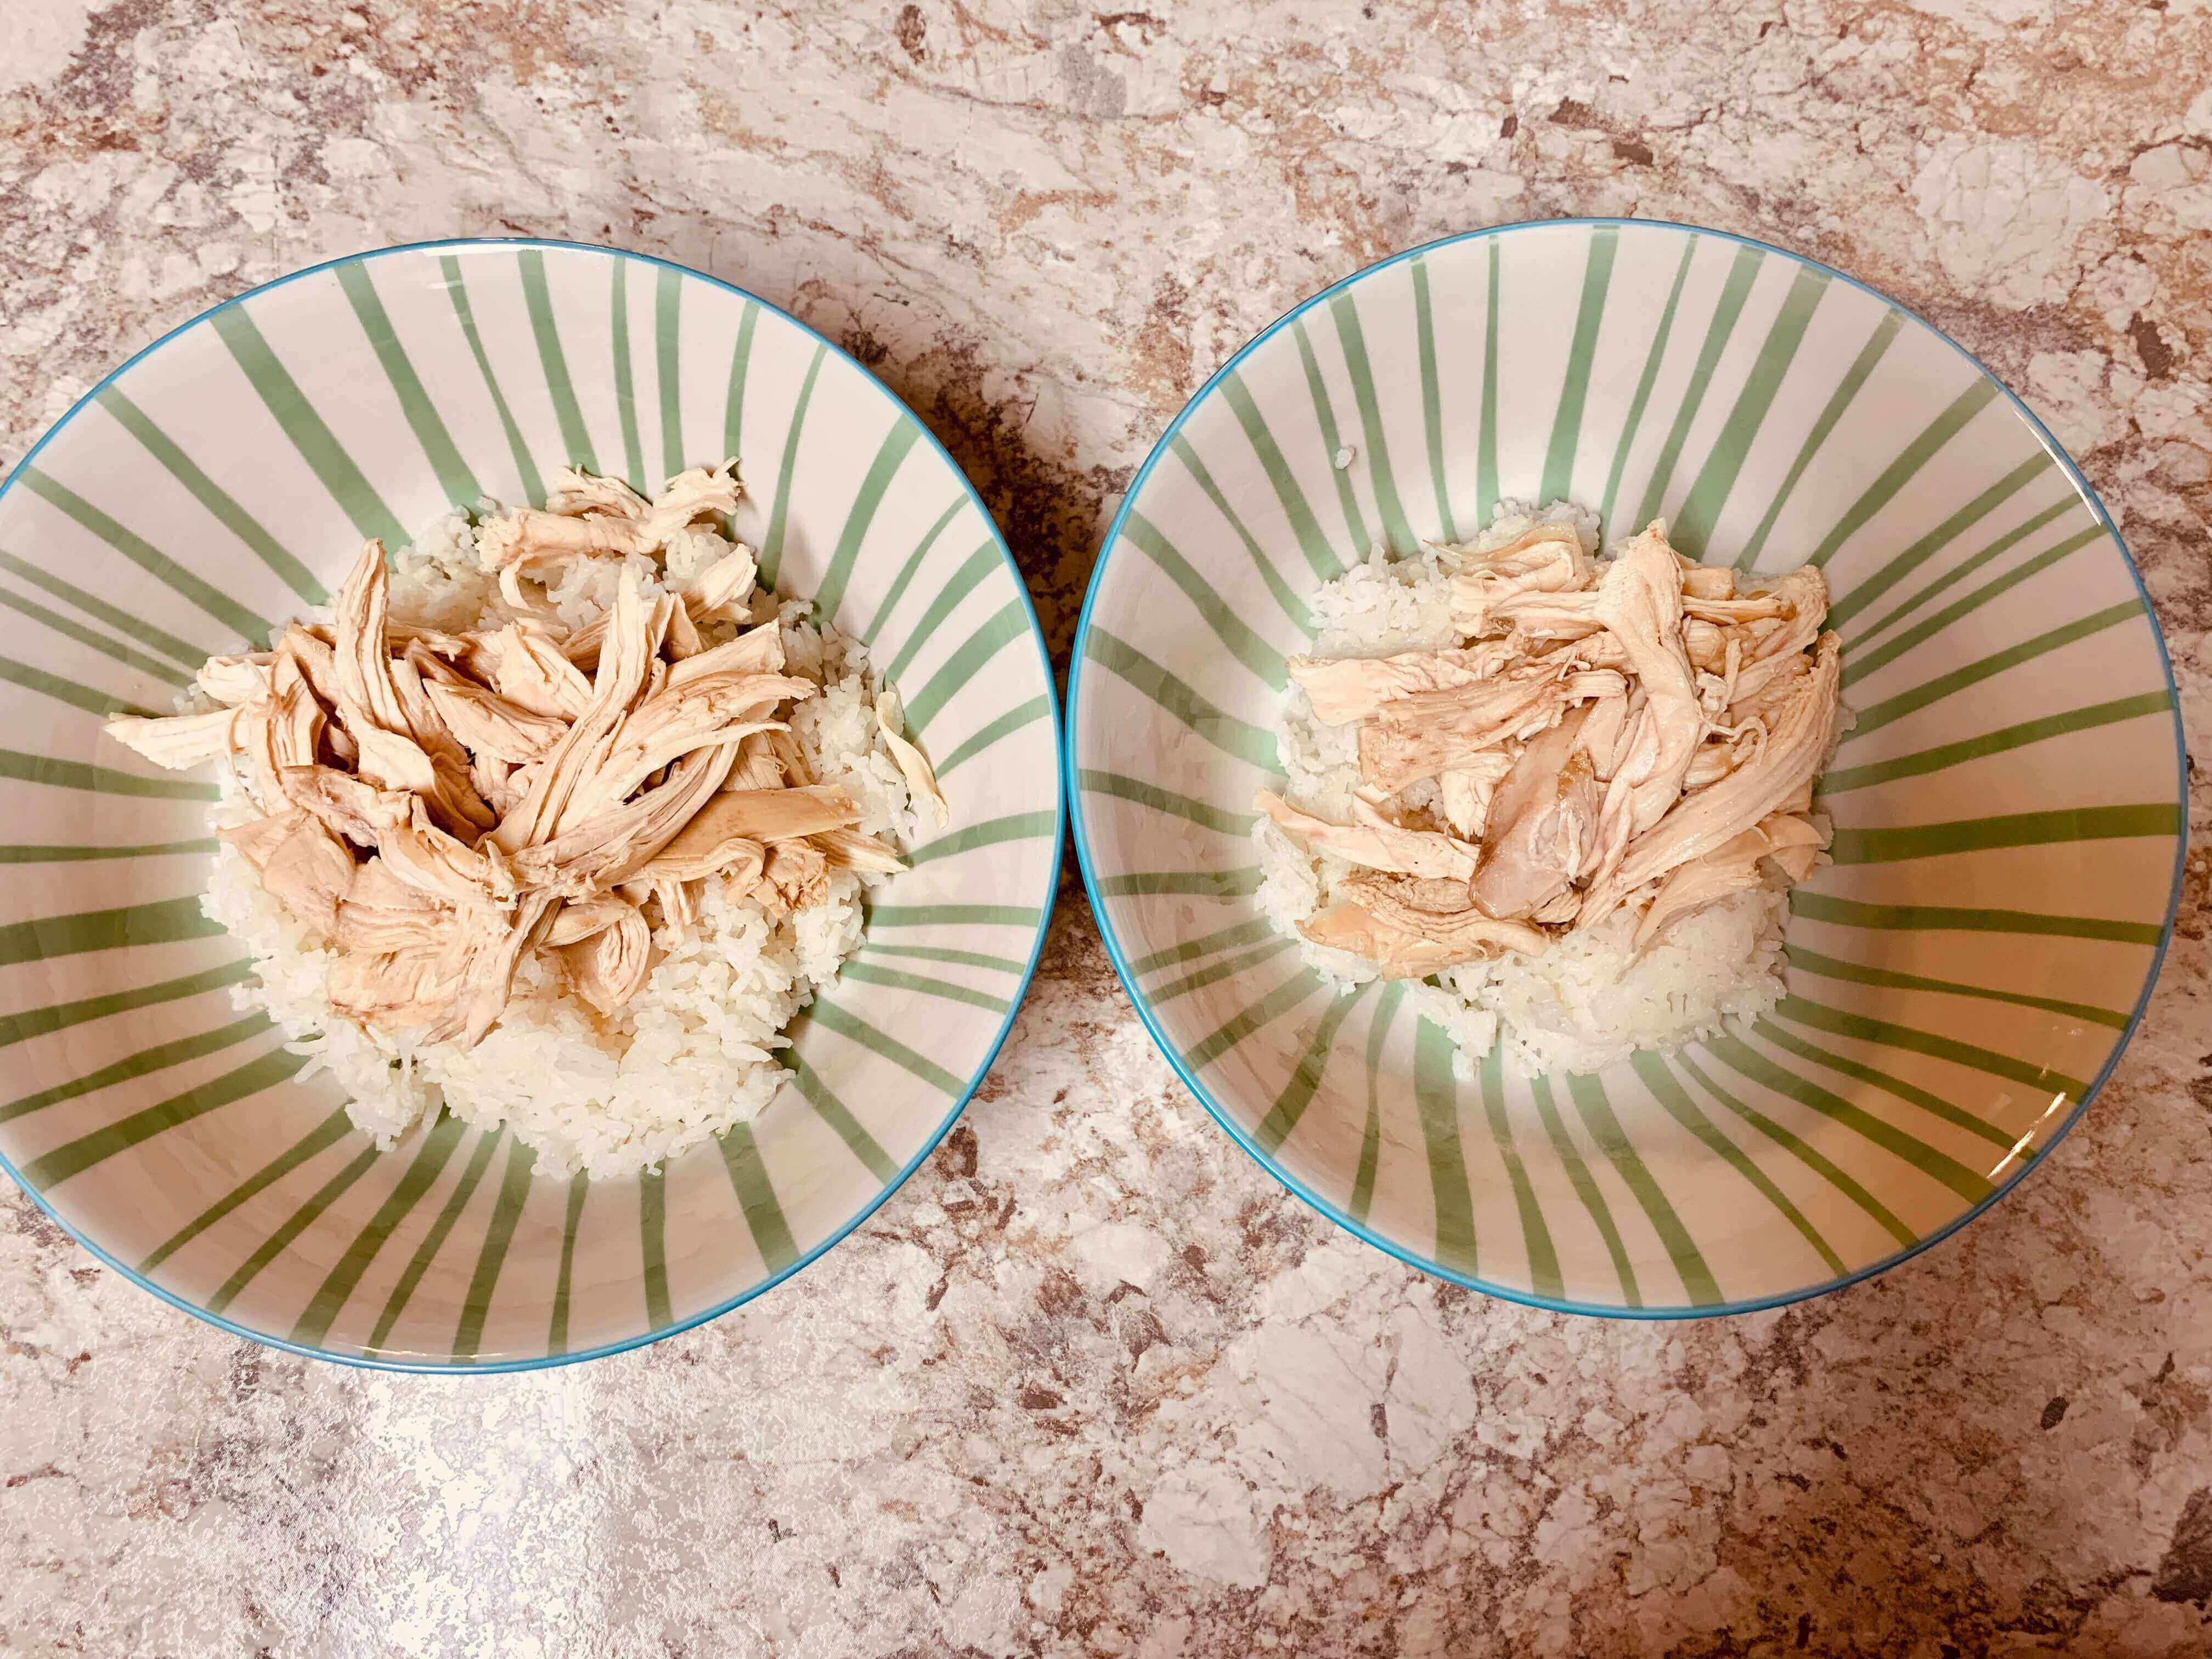 그릇-안에-흰쌀밥-찢은-치킨살이-올려진-모습